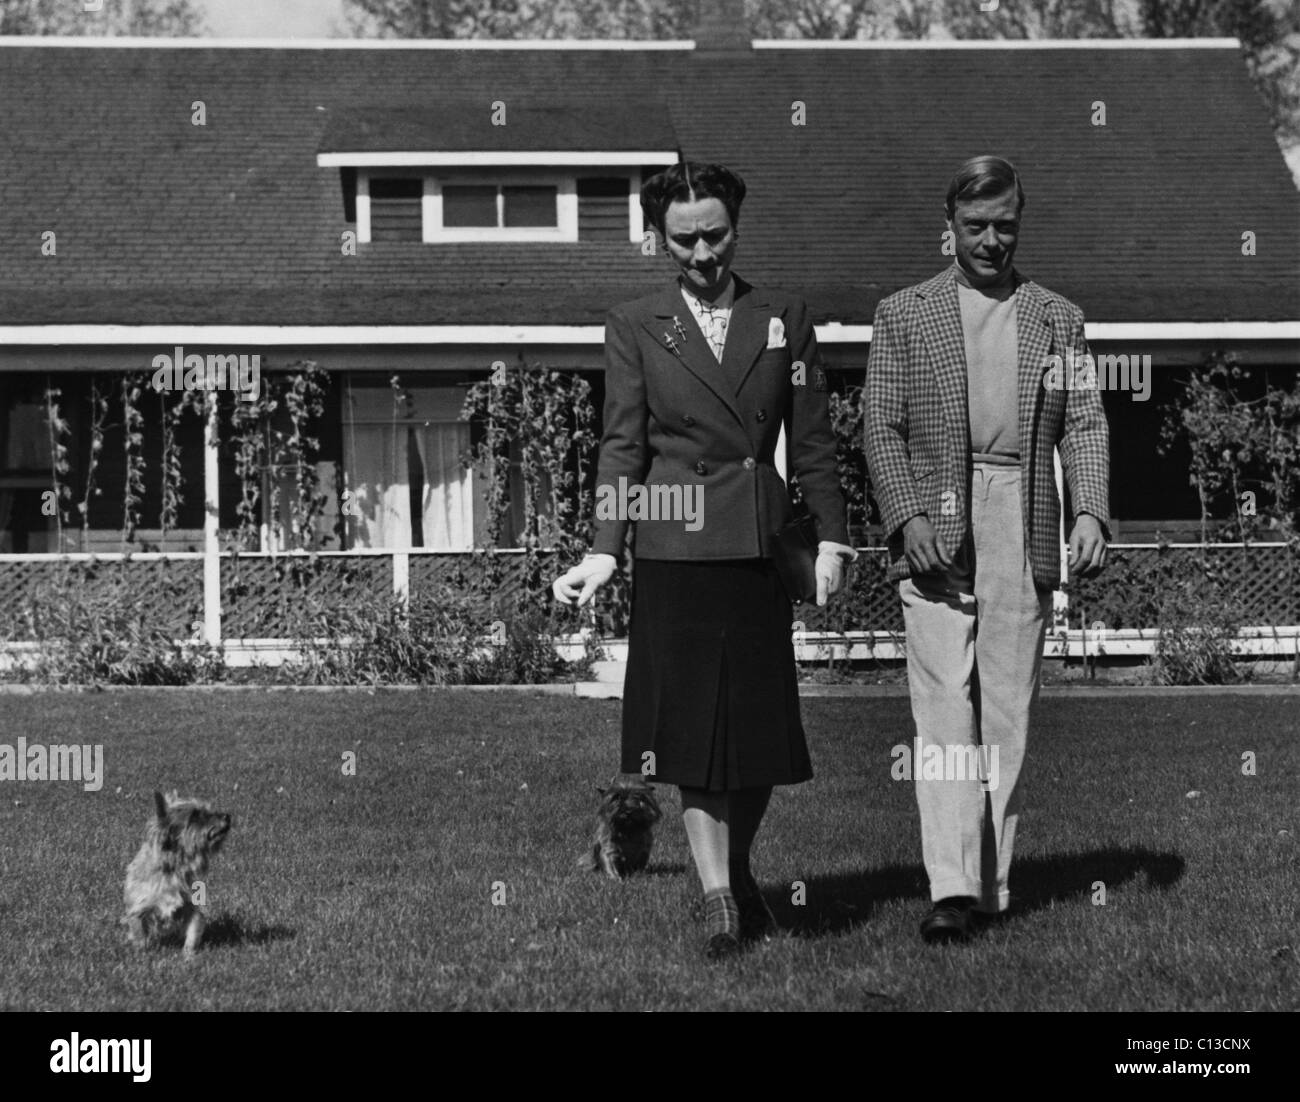 La Duchesse de Windsor, Wallis Simpson et le Prince Edward, duc de Windsor, vers le début des années 1940. Banque D'Images